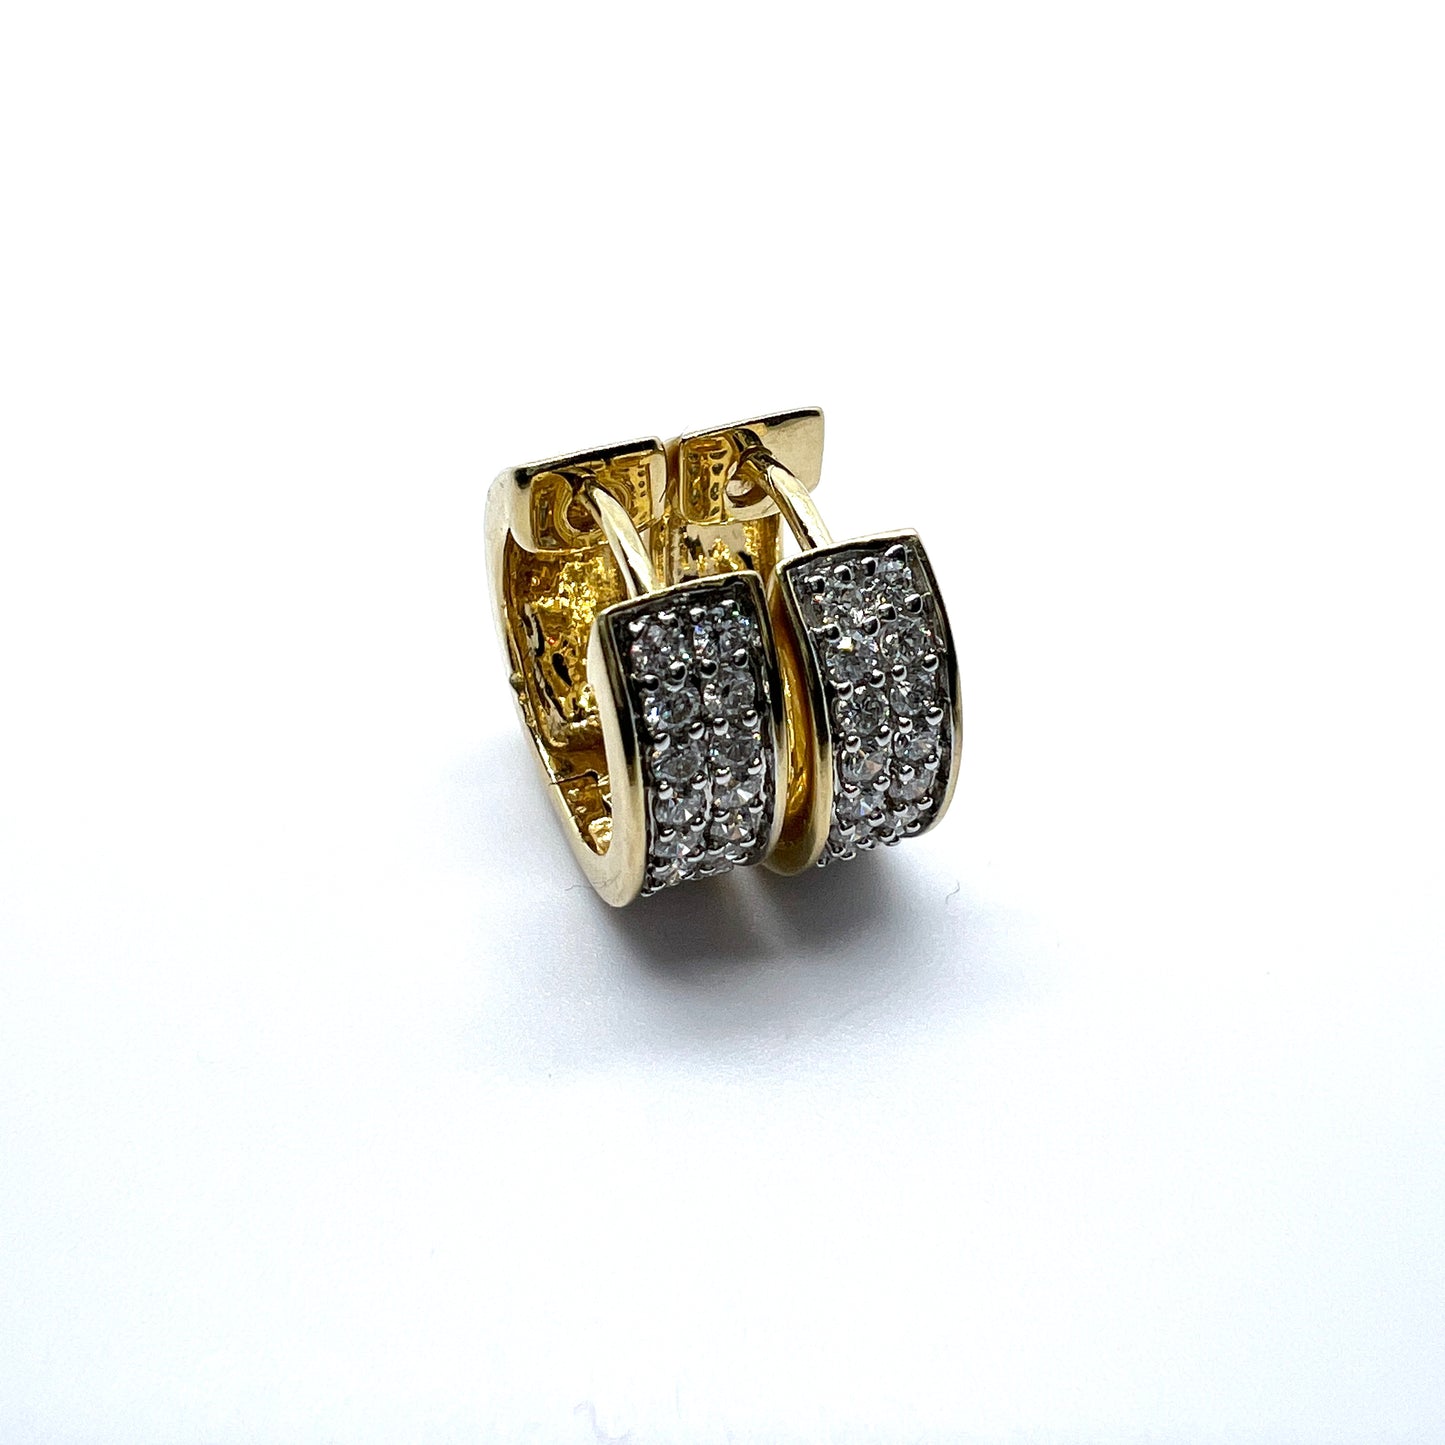 Sweden. Vintage 18k Gold Diamond Cluster Huggies Earrings.